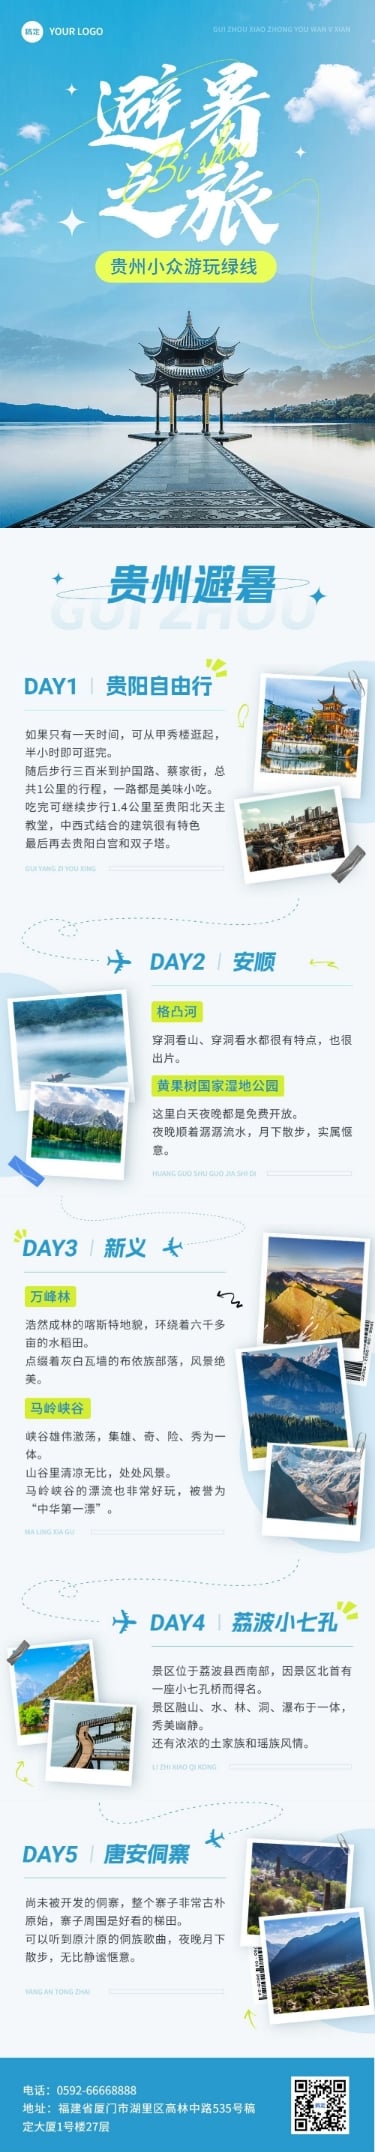 旅游出行宣传微信公众号文章长图